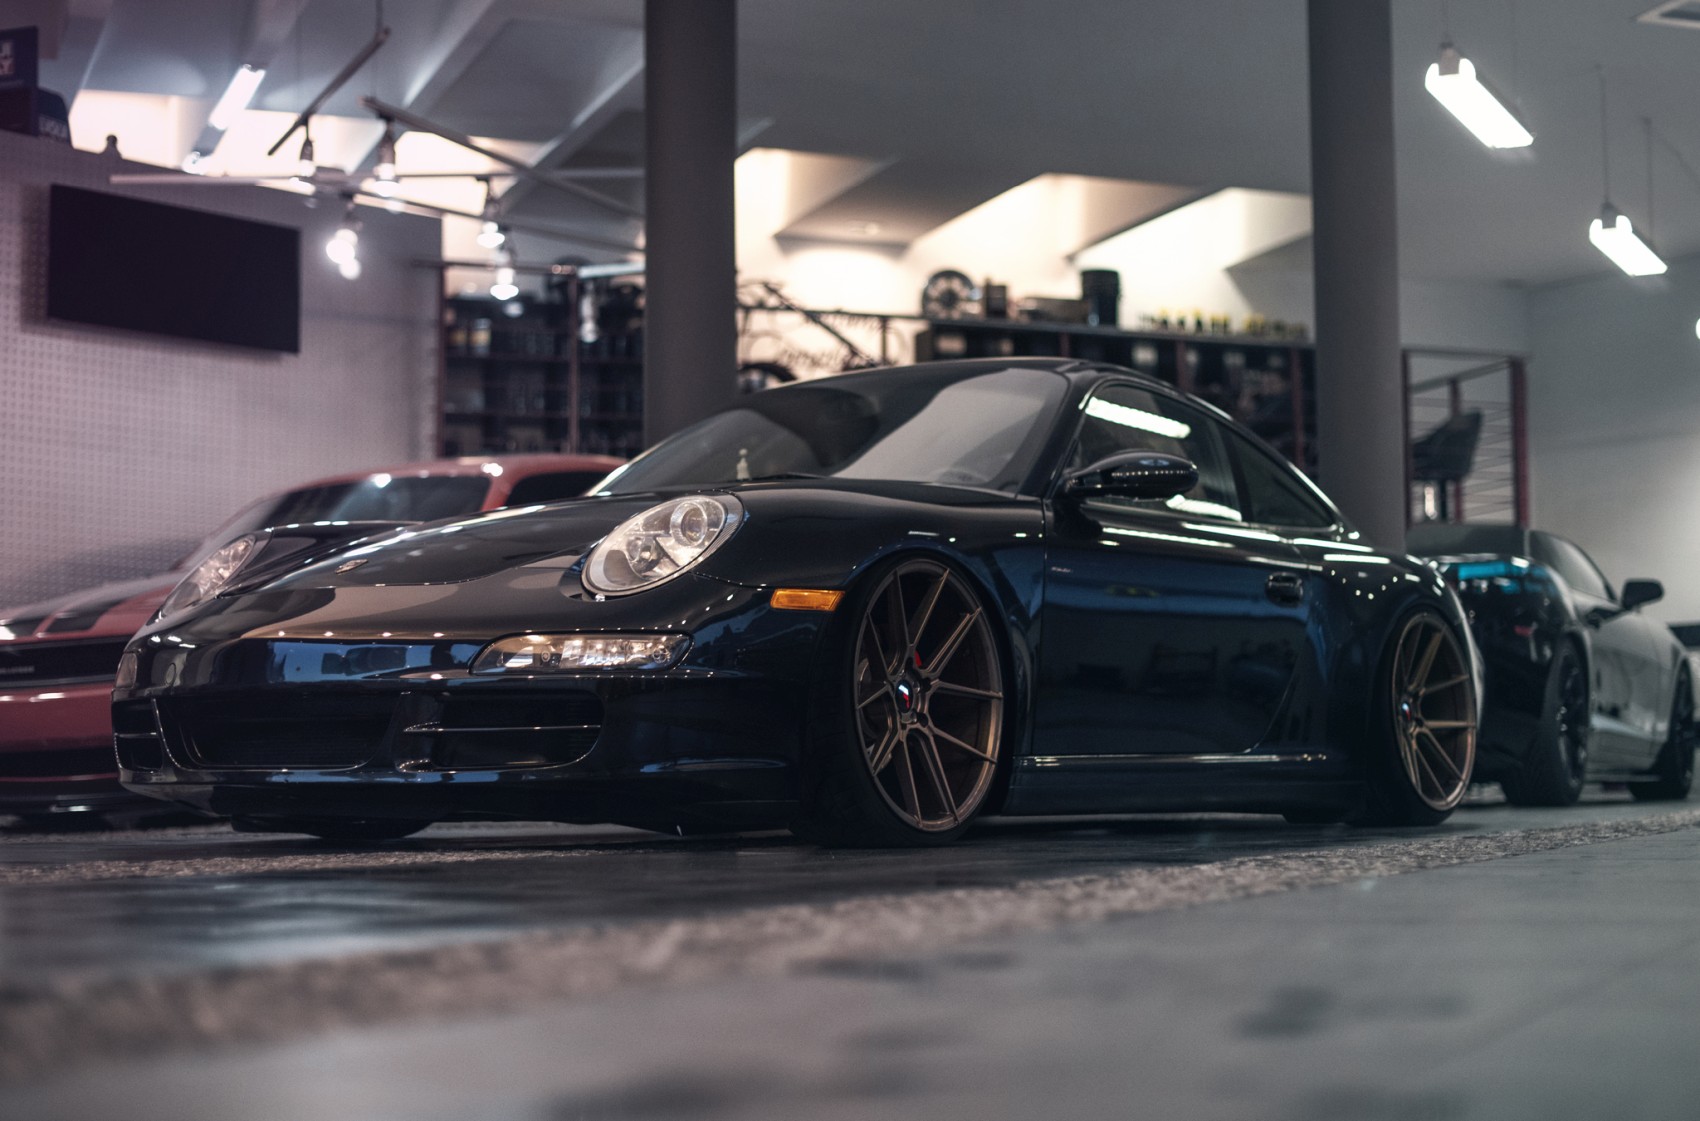 Porsche gallery